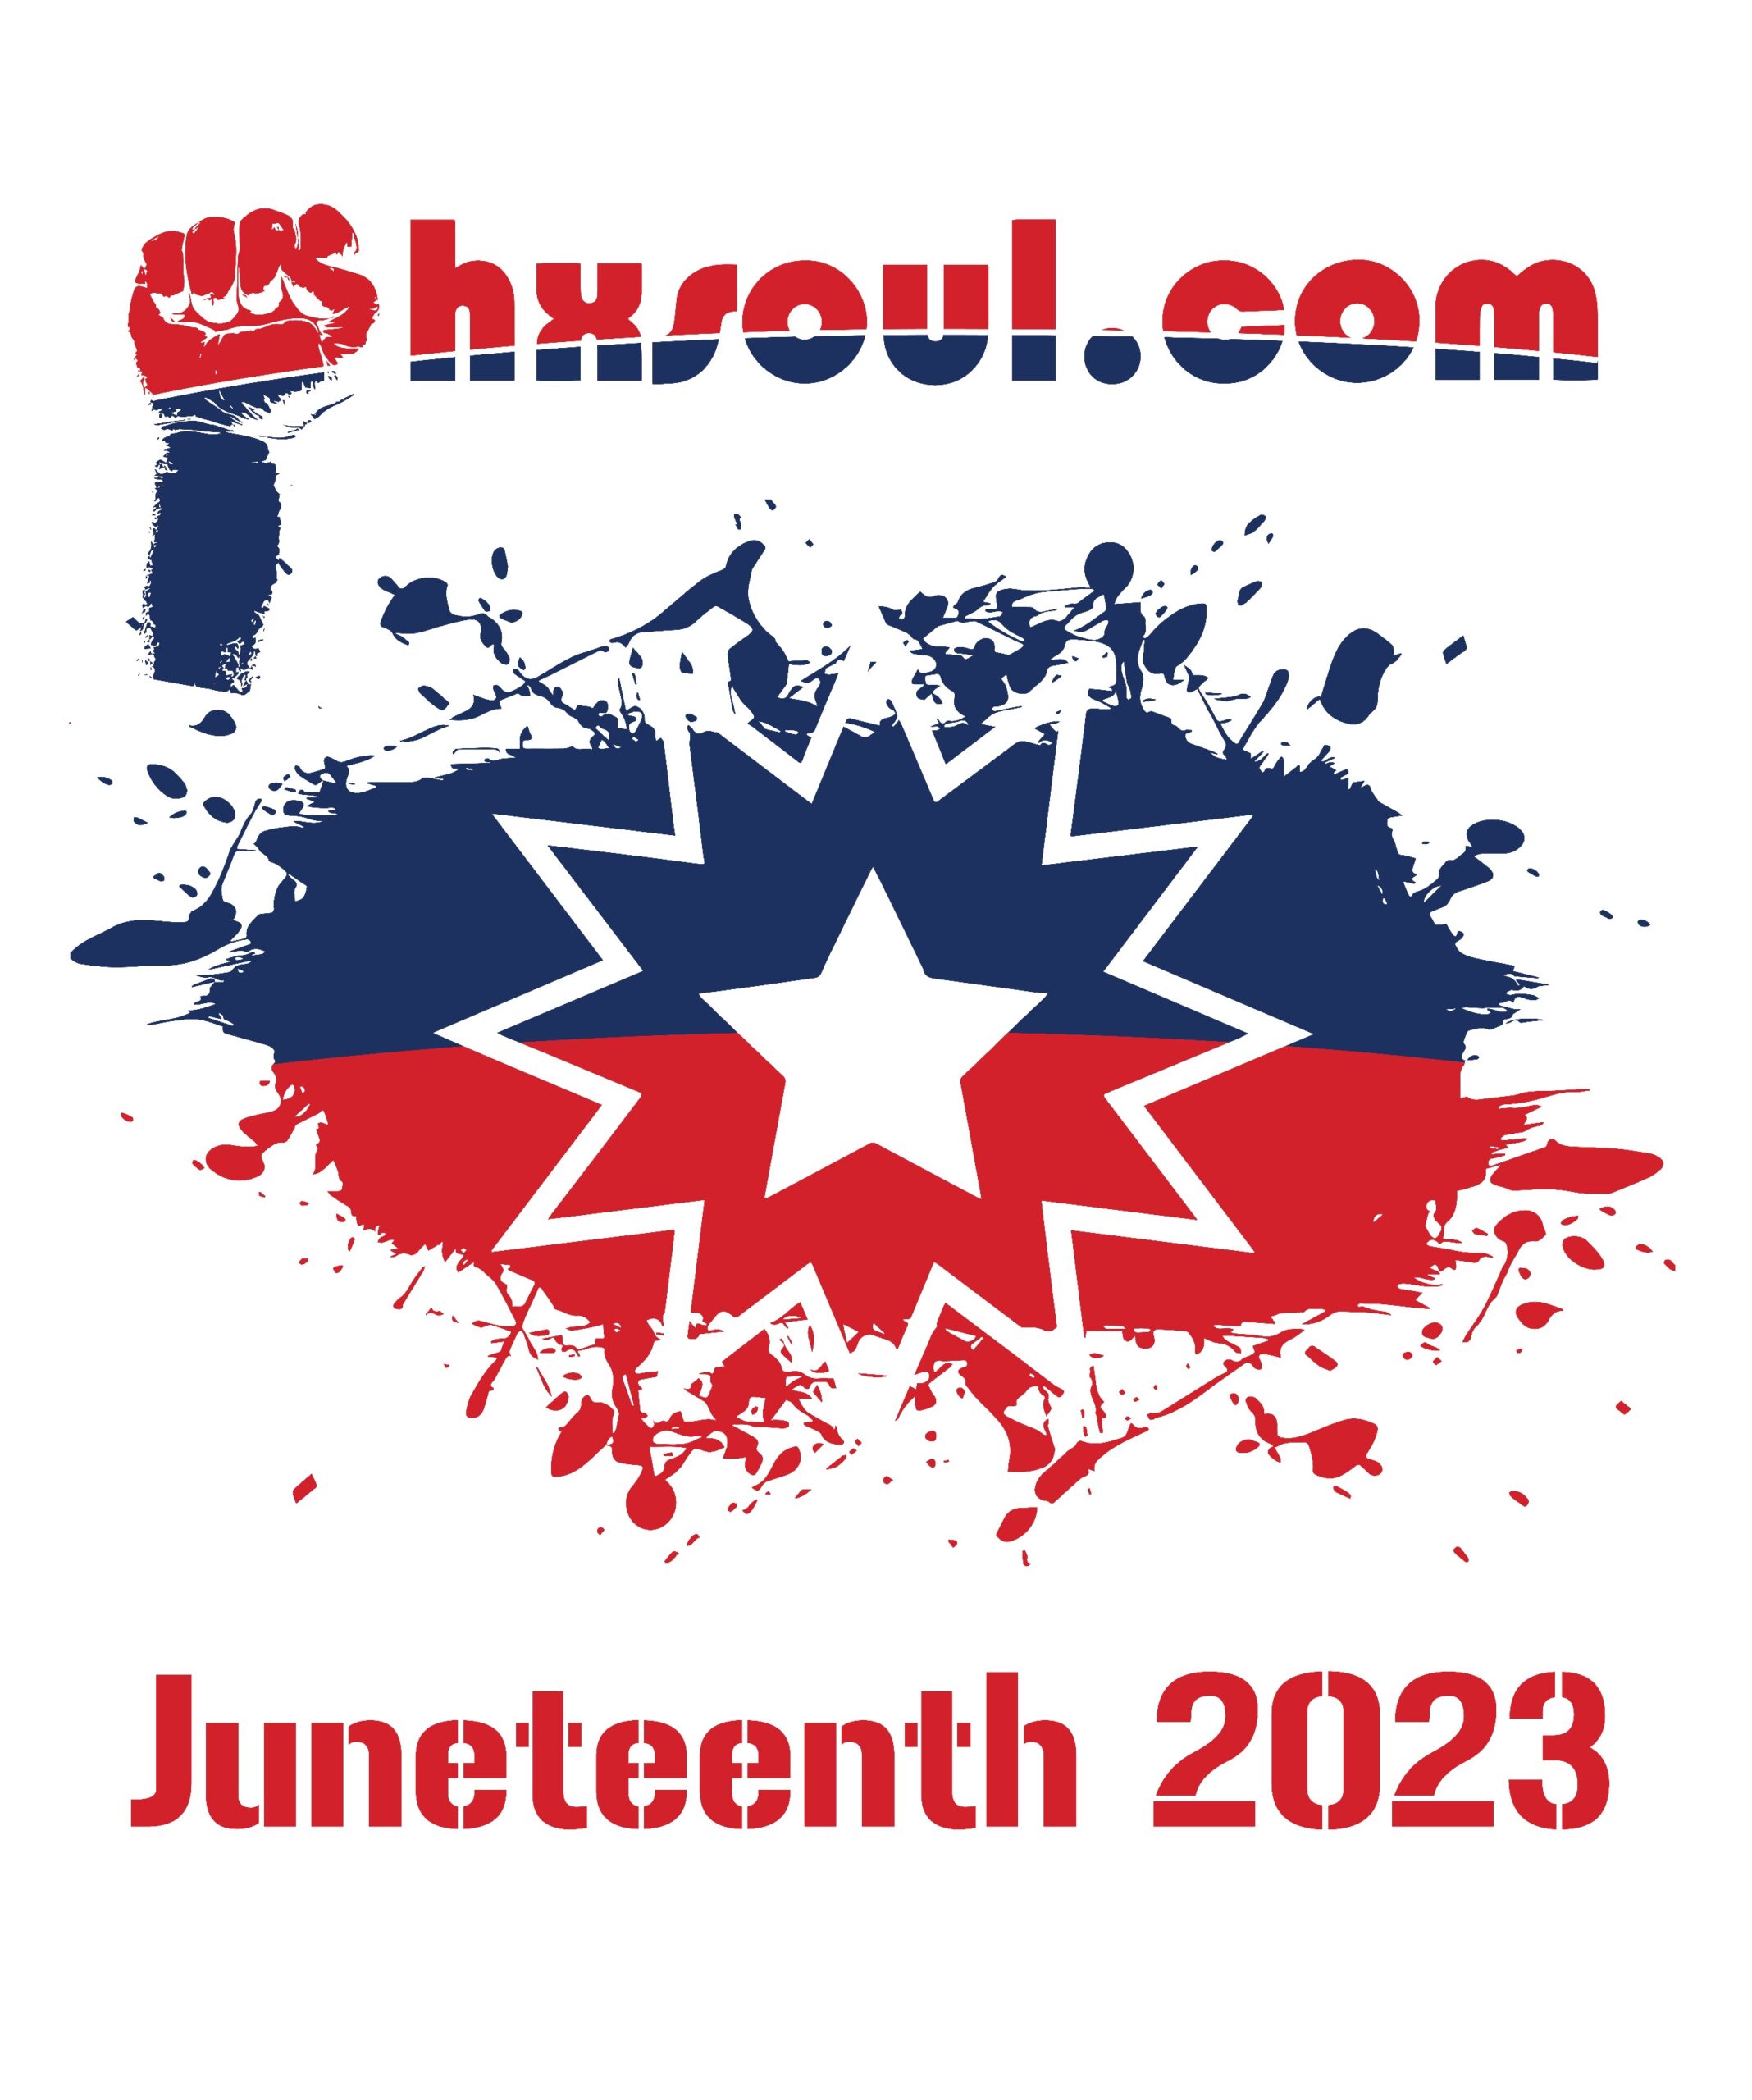 Juneteenth 2023